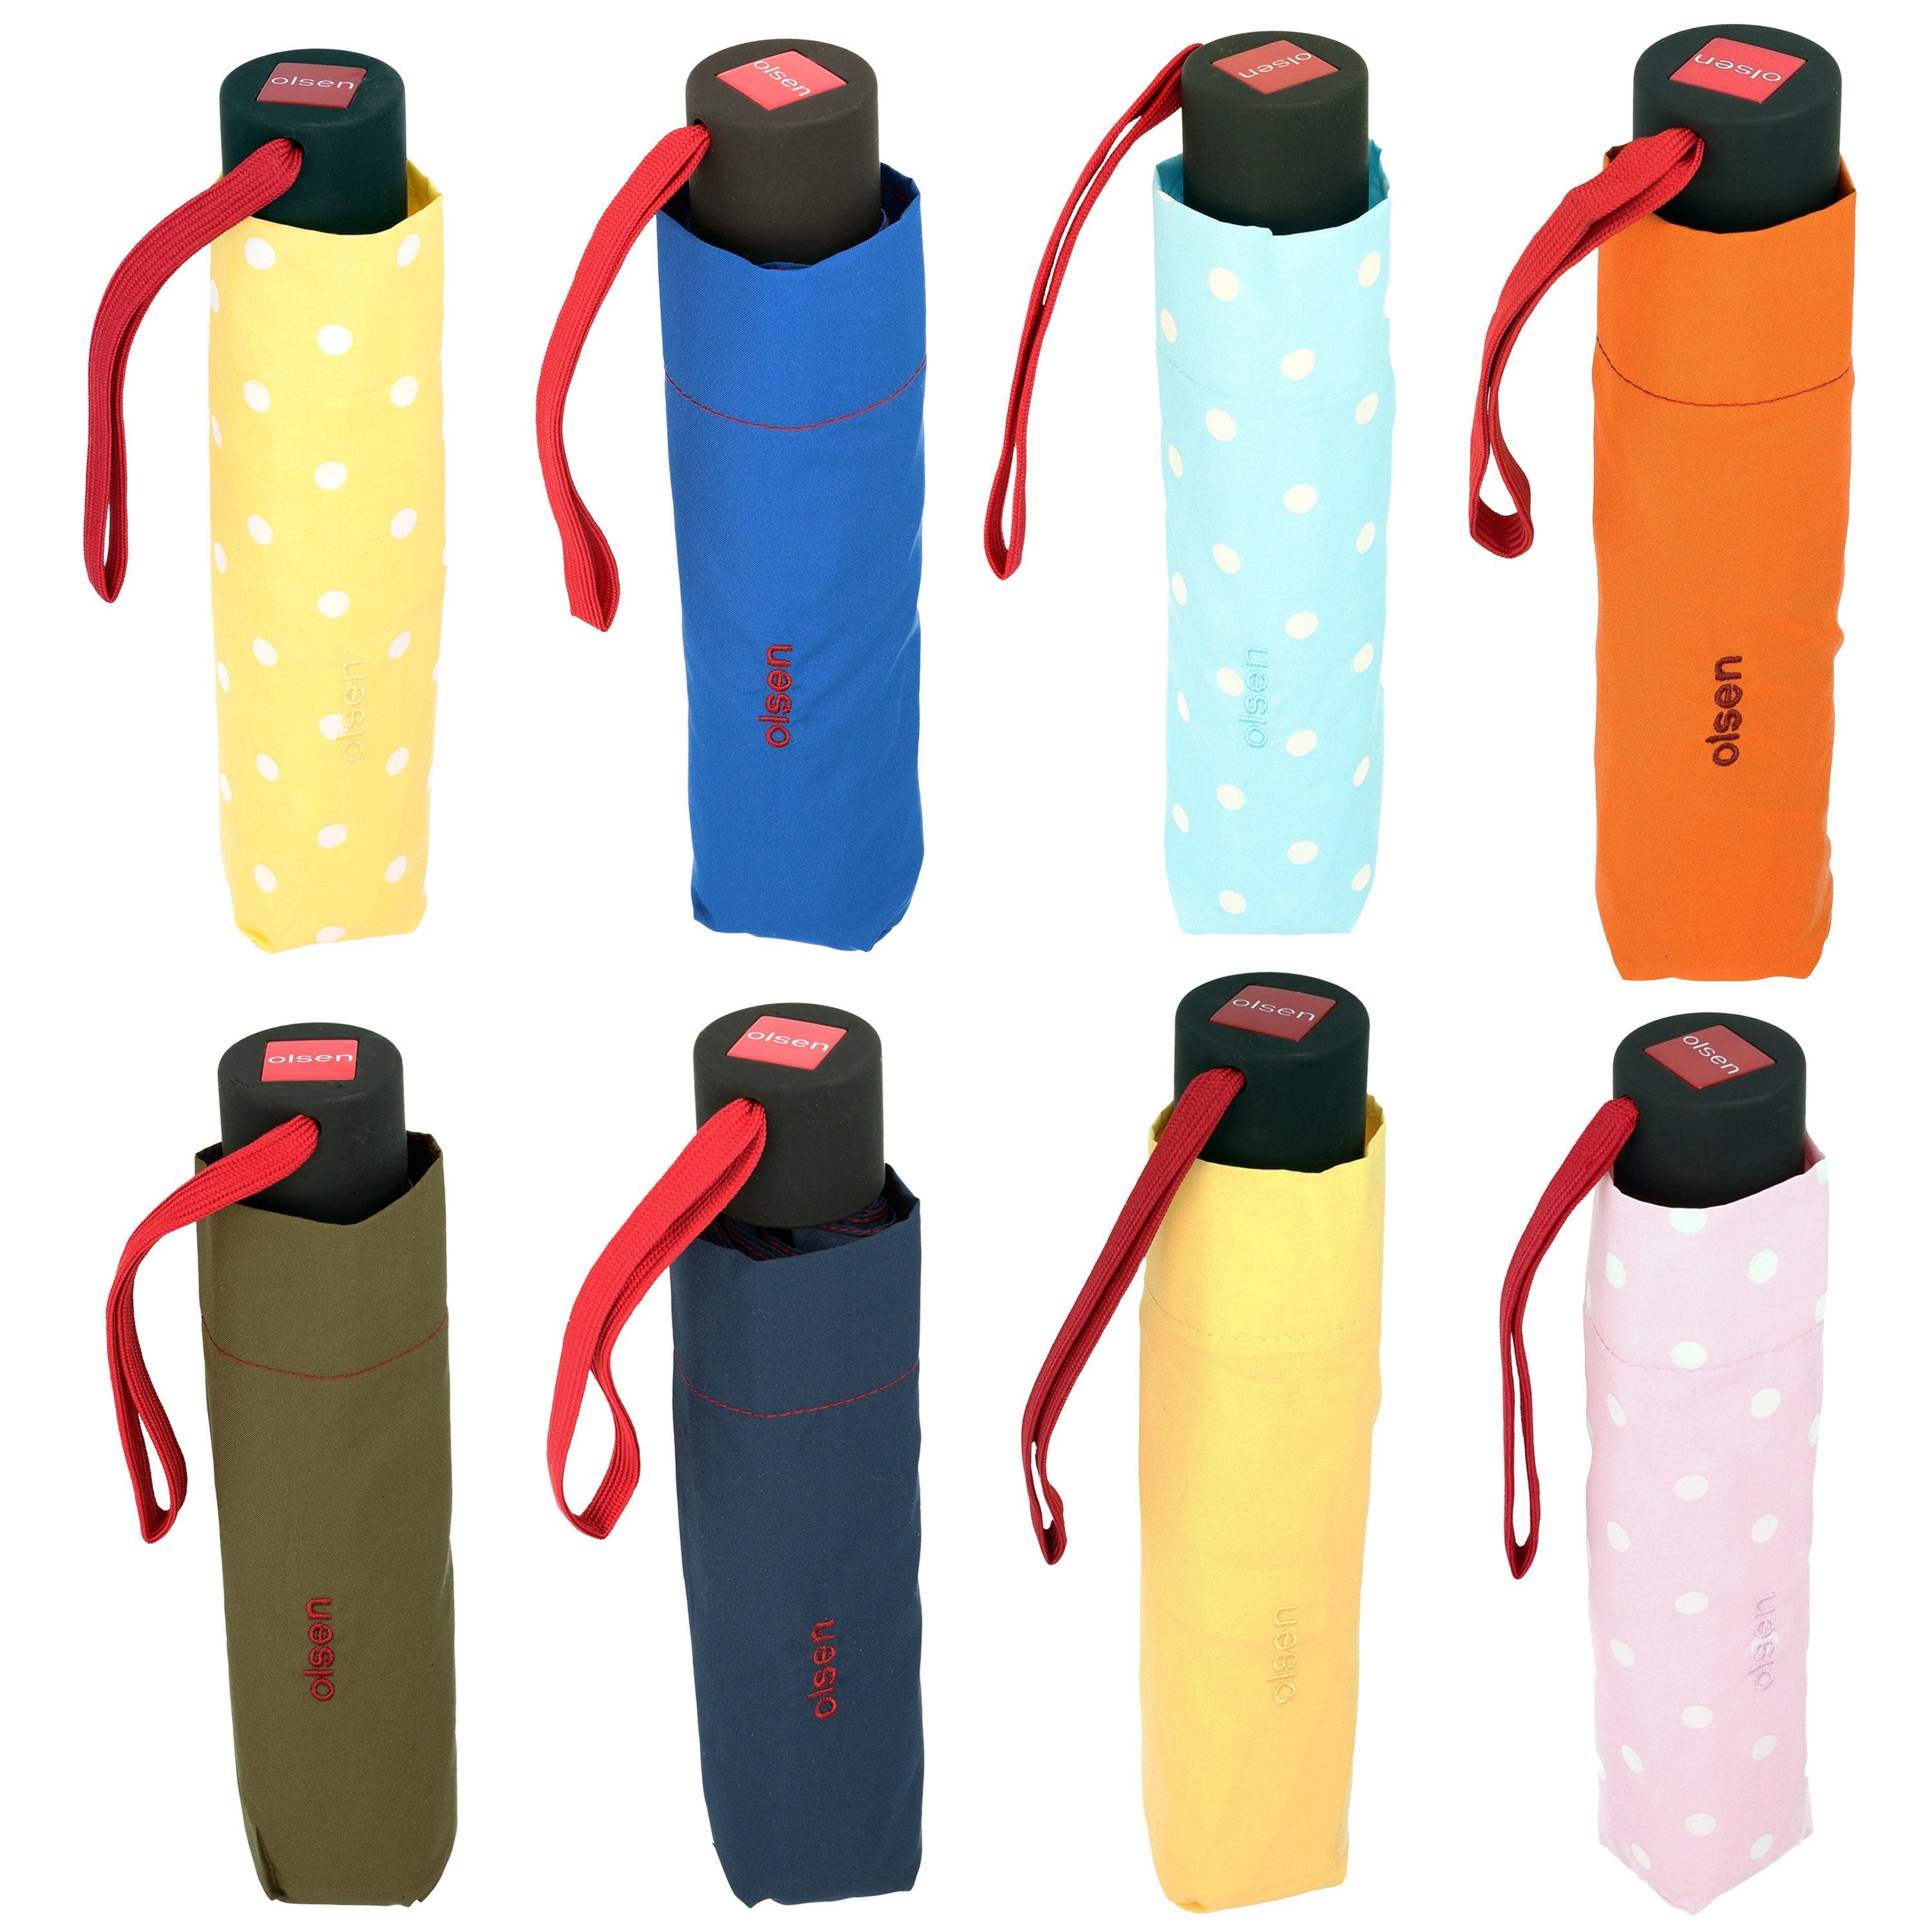 Olsen Taschenregenschirm Kleiner Regenschirm für fröhlichen in die Handtasche, Farben